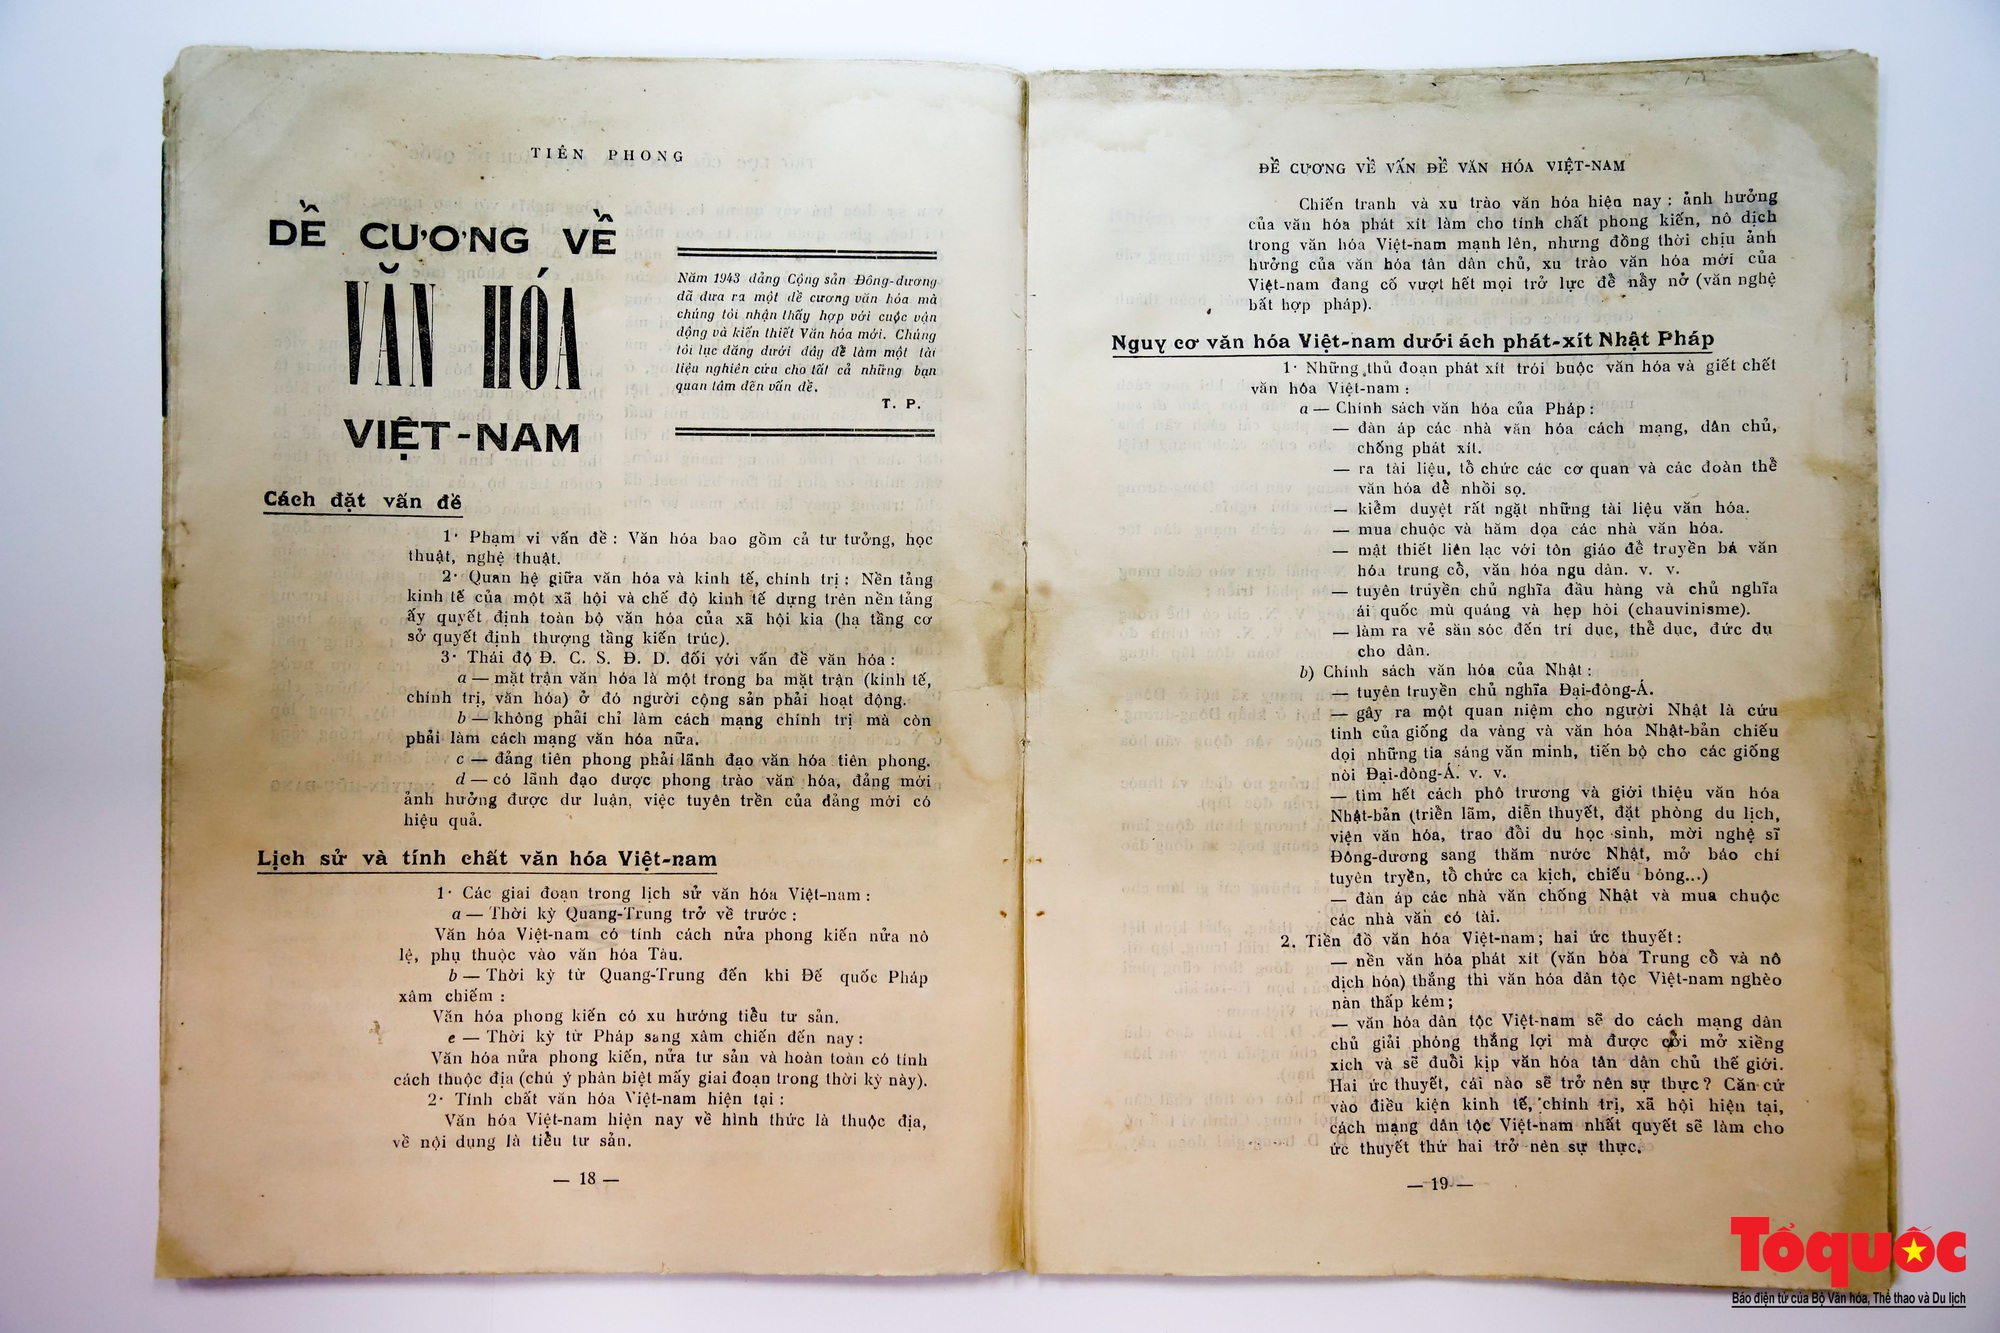 Đề cương về văn hóa Việt Nam năm 1943- nền tảng để quan điểm, đường lối, tư duy của Đảng ta về văn hóa ngày càng đổi mới, hoàn thiện và phát triển - Ảnh 1.